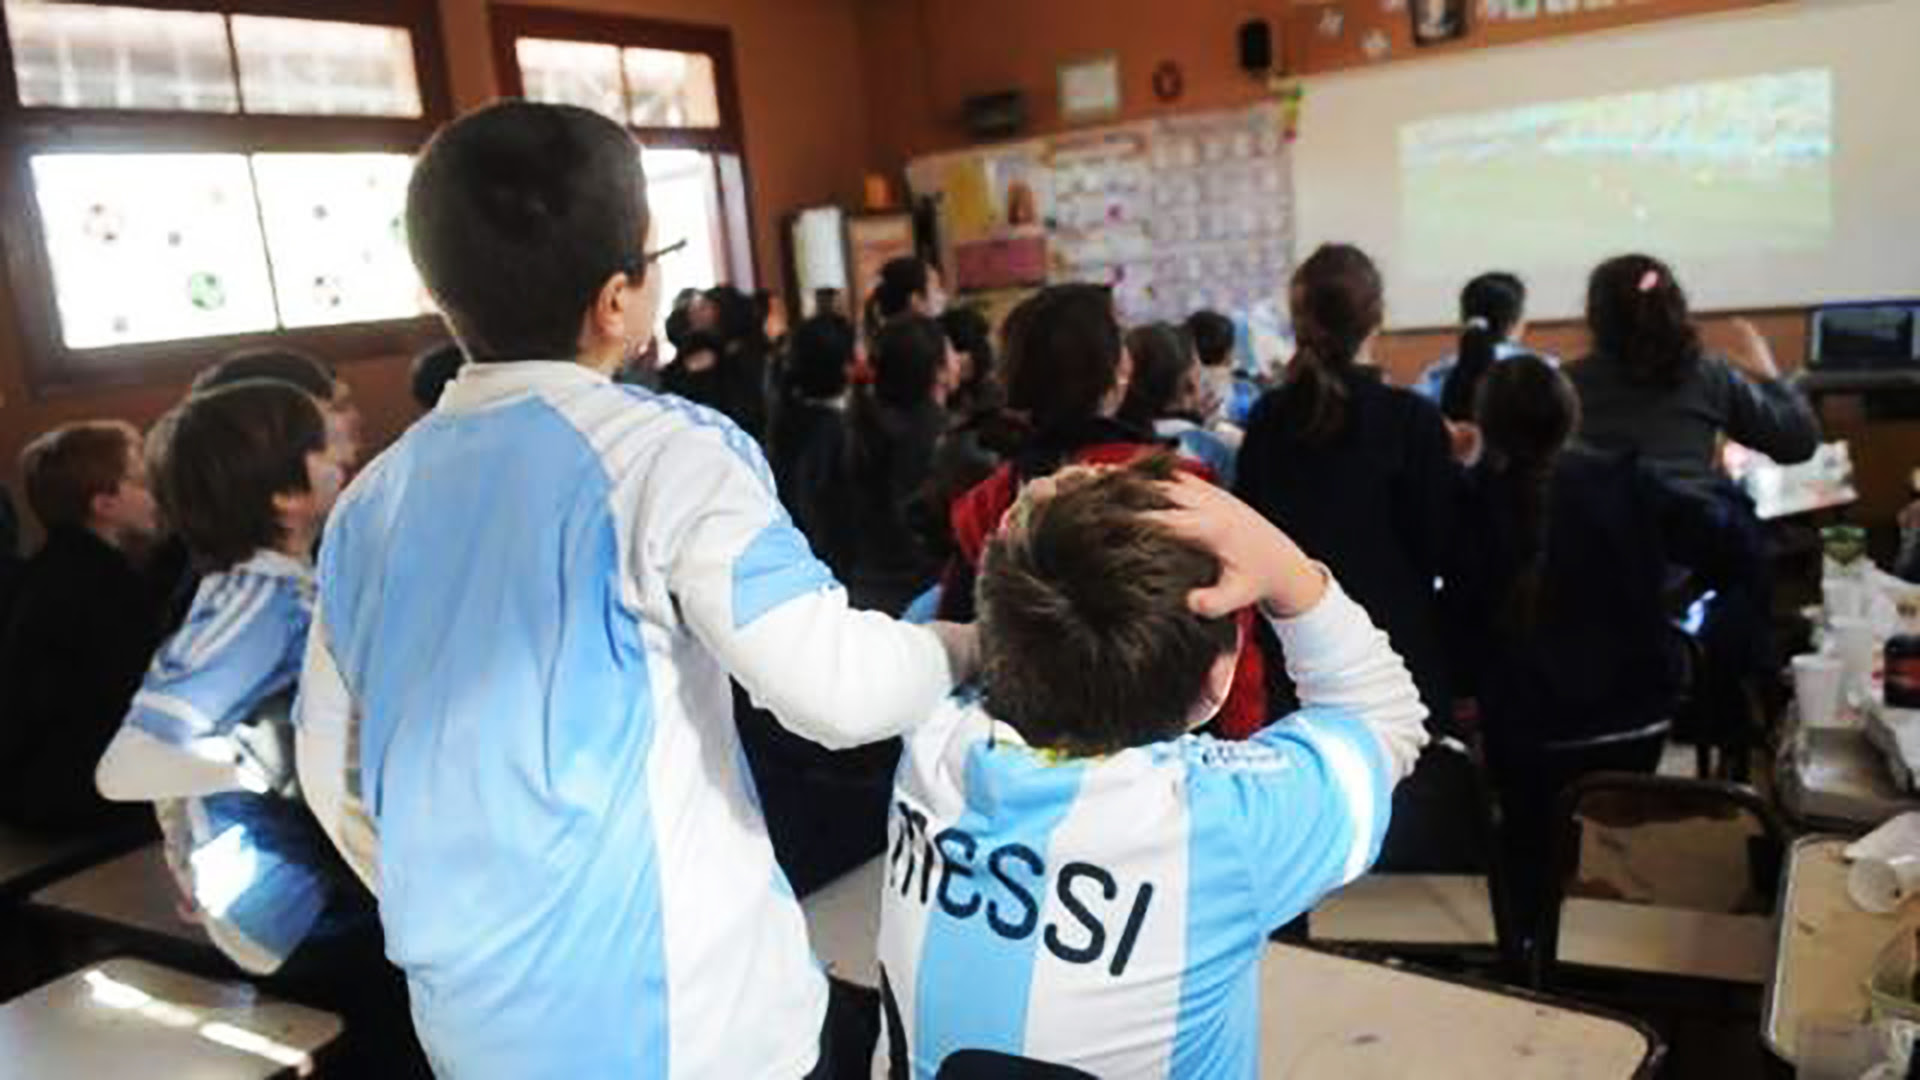 Los alumnos de todas las escuelas de la provincia de Buenos Aires trabajarán la temática del próximo Mundial de Fútbol en Qatar en todas las materias curriculares